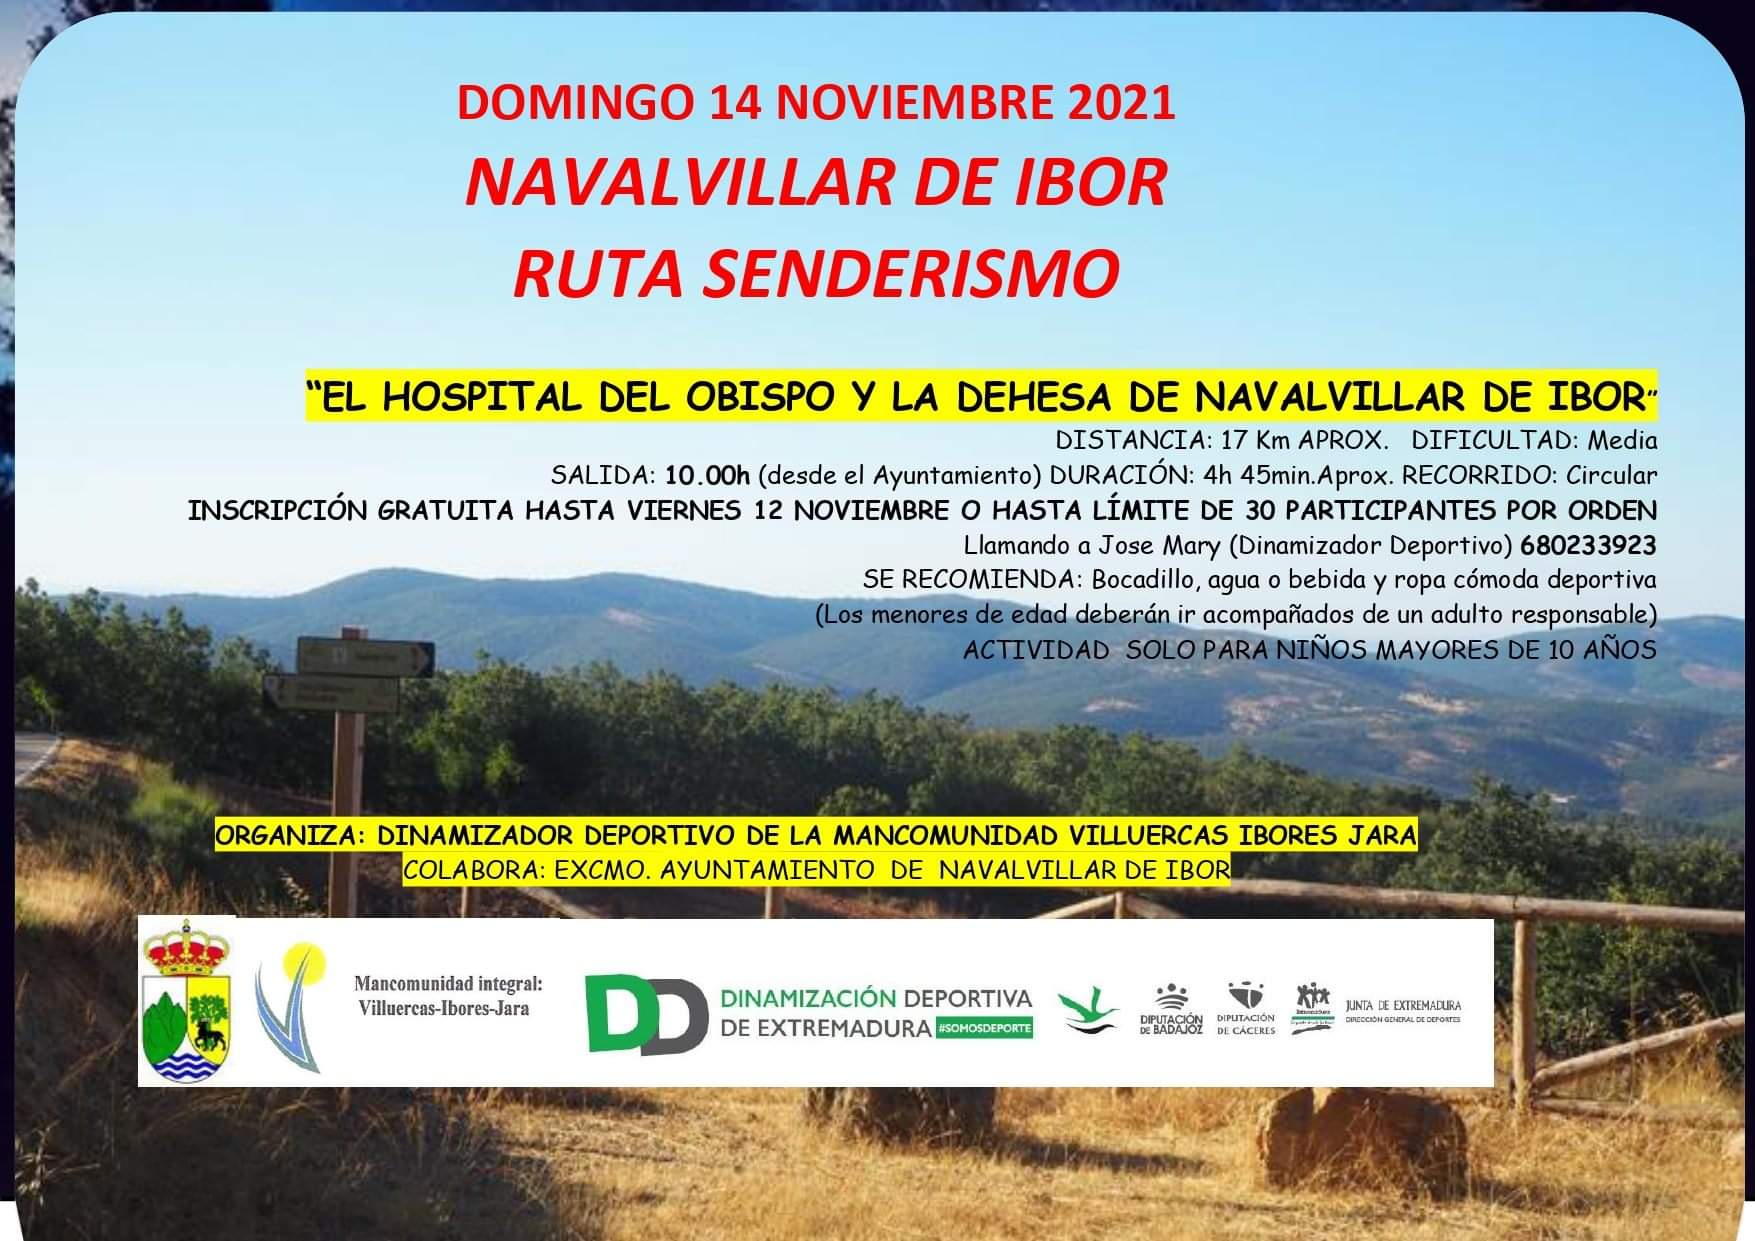 Ruta senderista (noviembre 2021) - Navalvillar de Ibor (Cáceres)